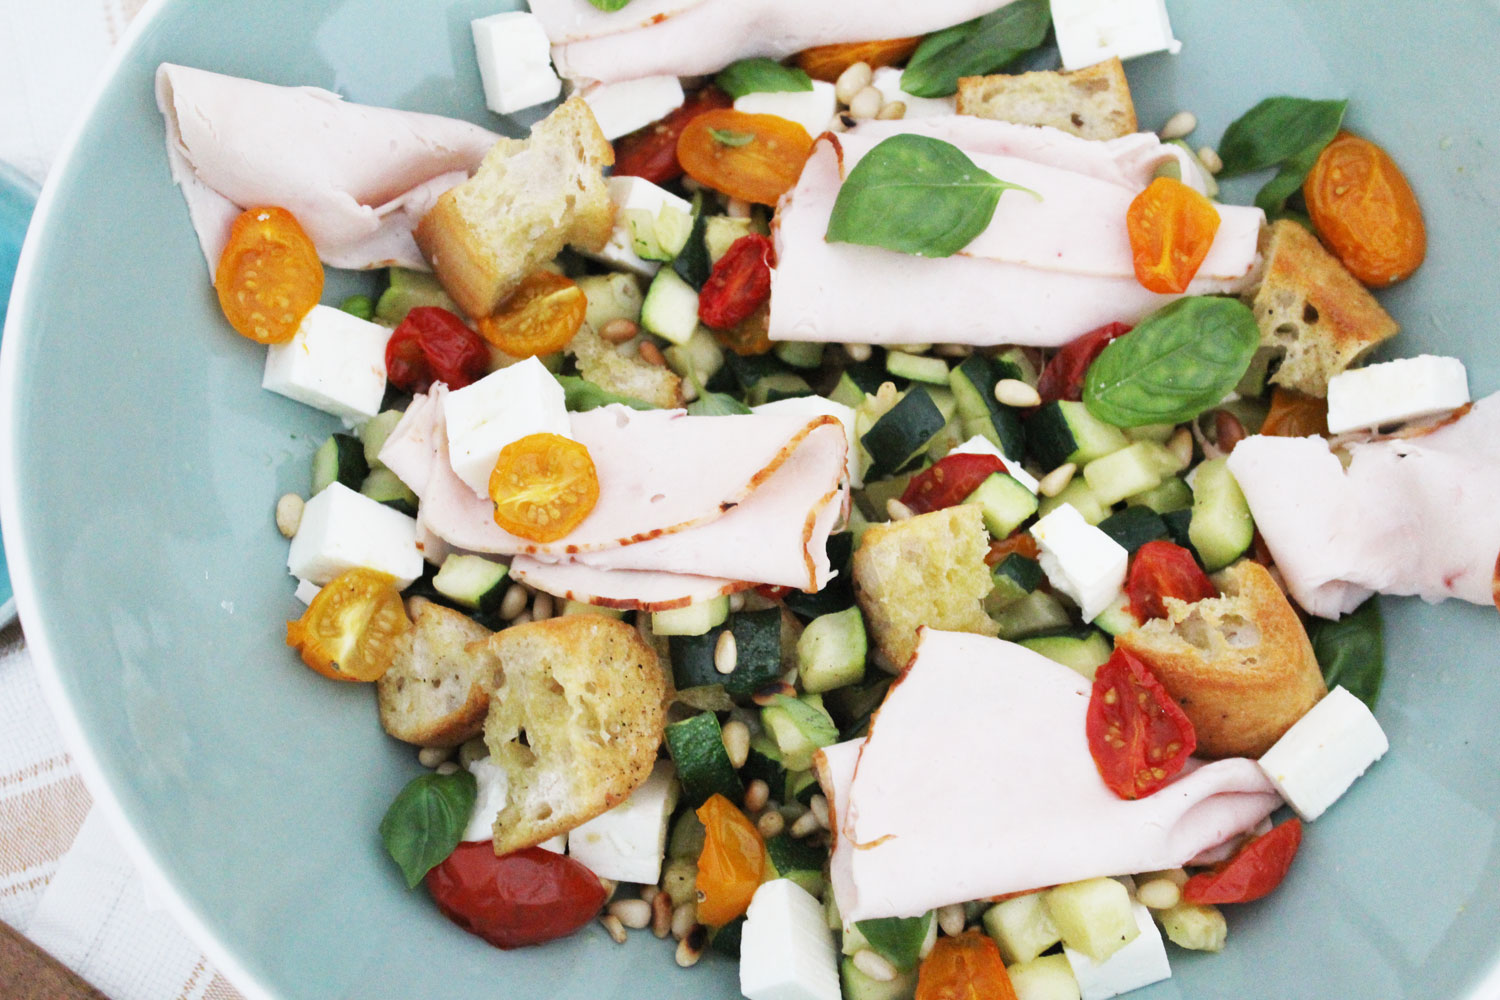 Lauwe salade met courgette, feta, tomaatjes, ciabatta en kipfilet van Aoste #collab